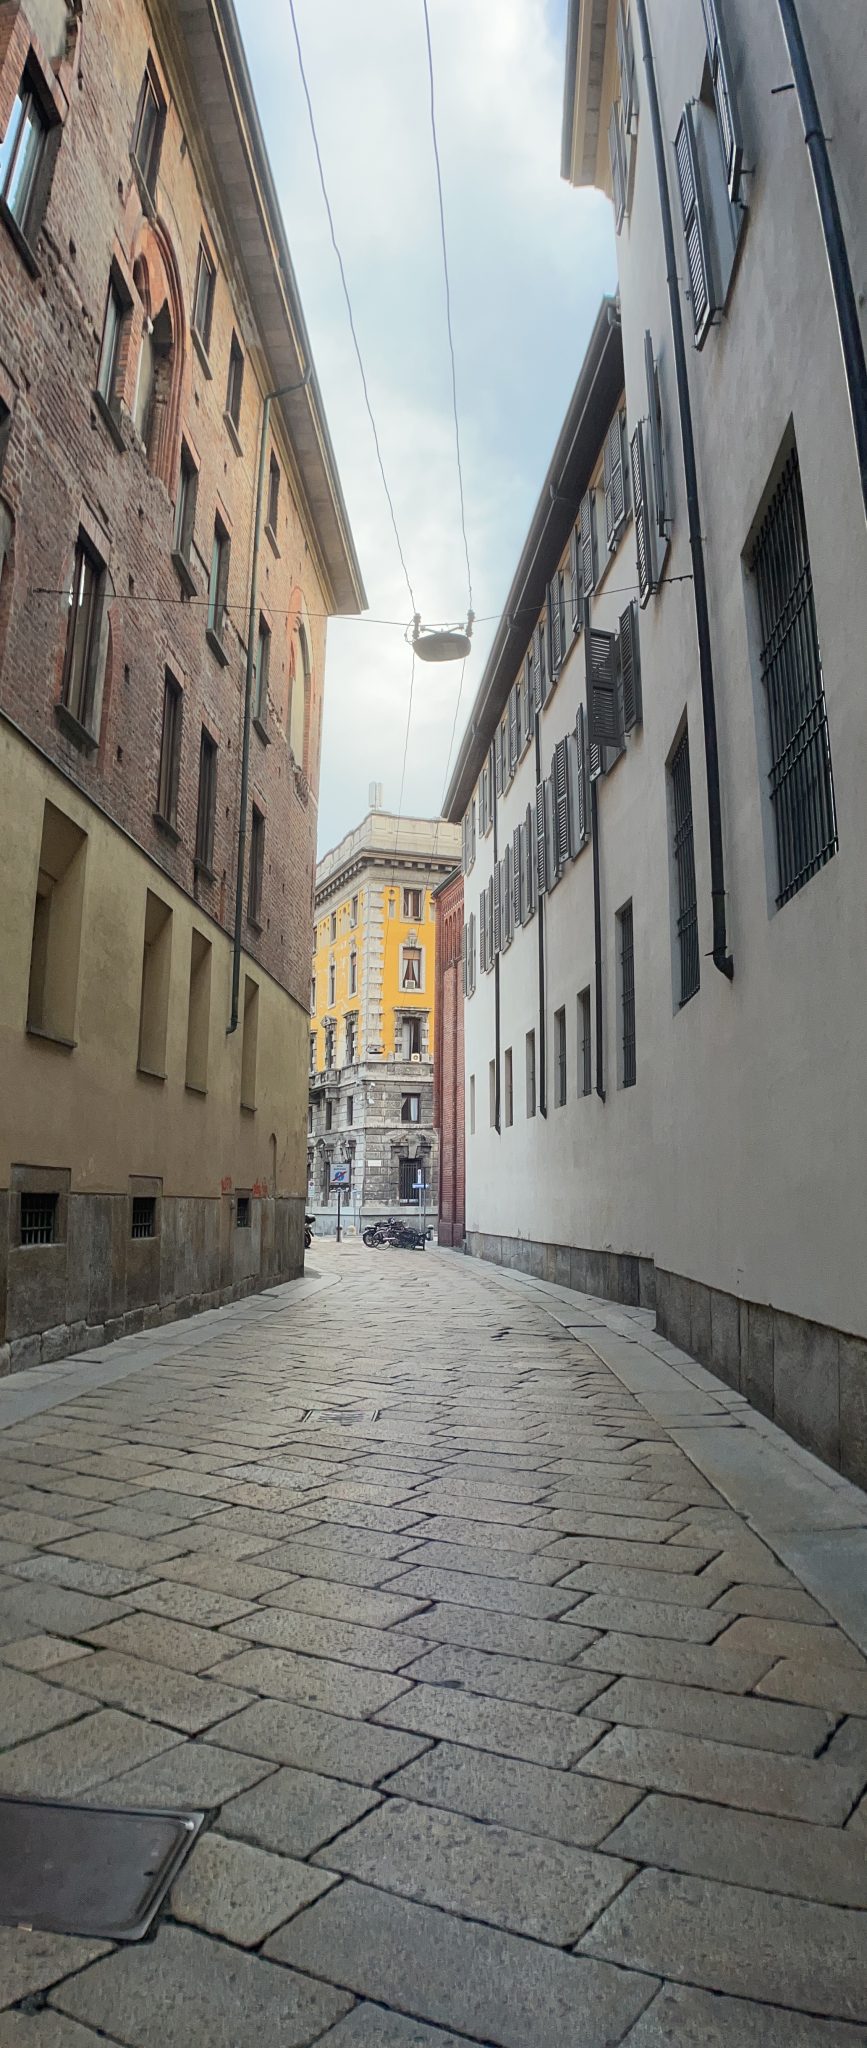 Milan city street, Italy